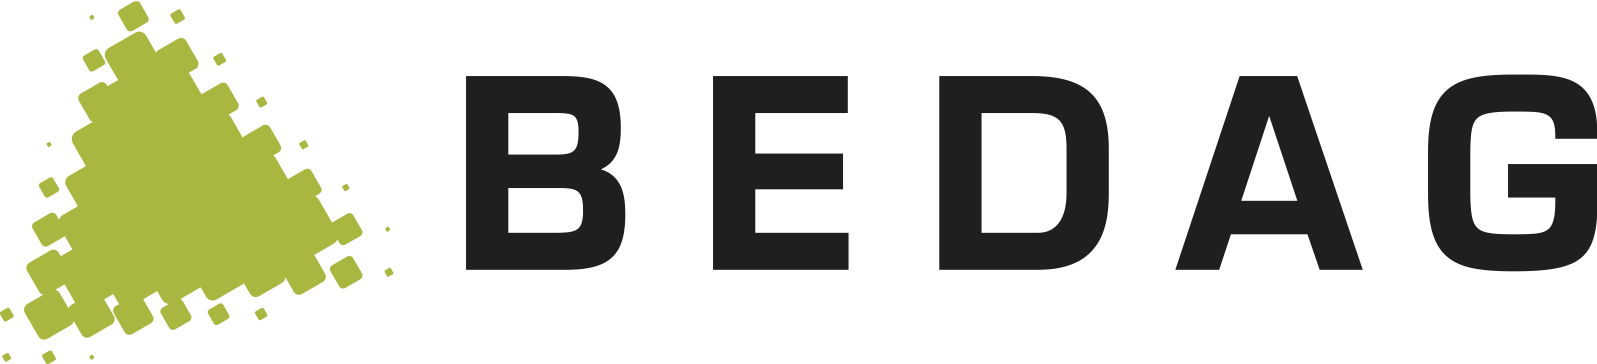 Es wird ein Icon abgebildet, welches das Logo von Bedag zeigt